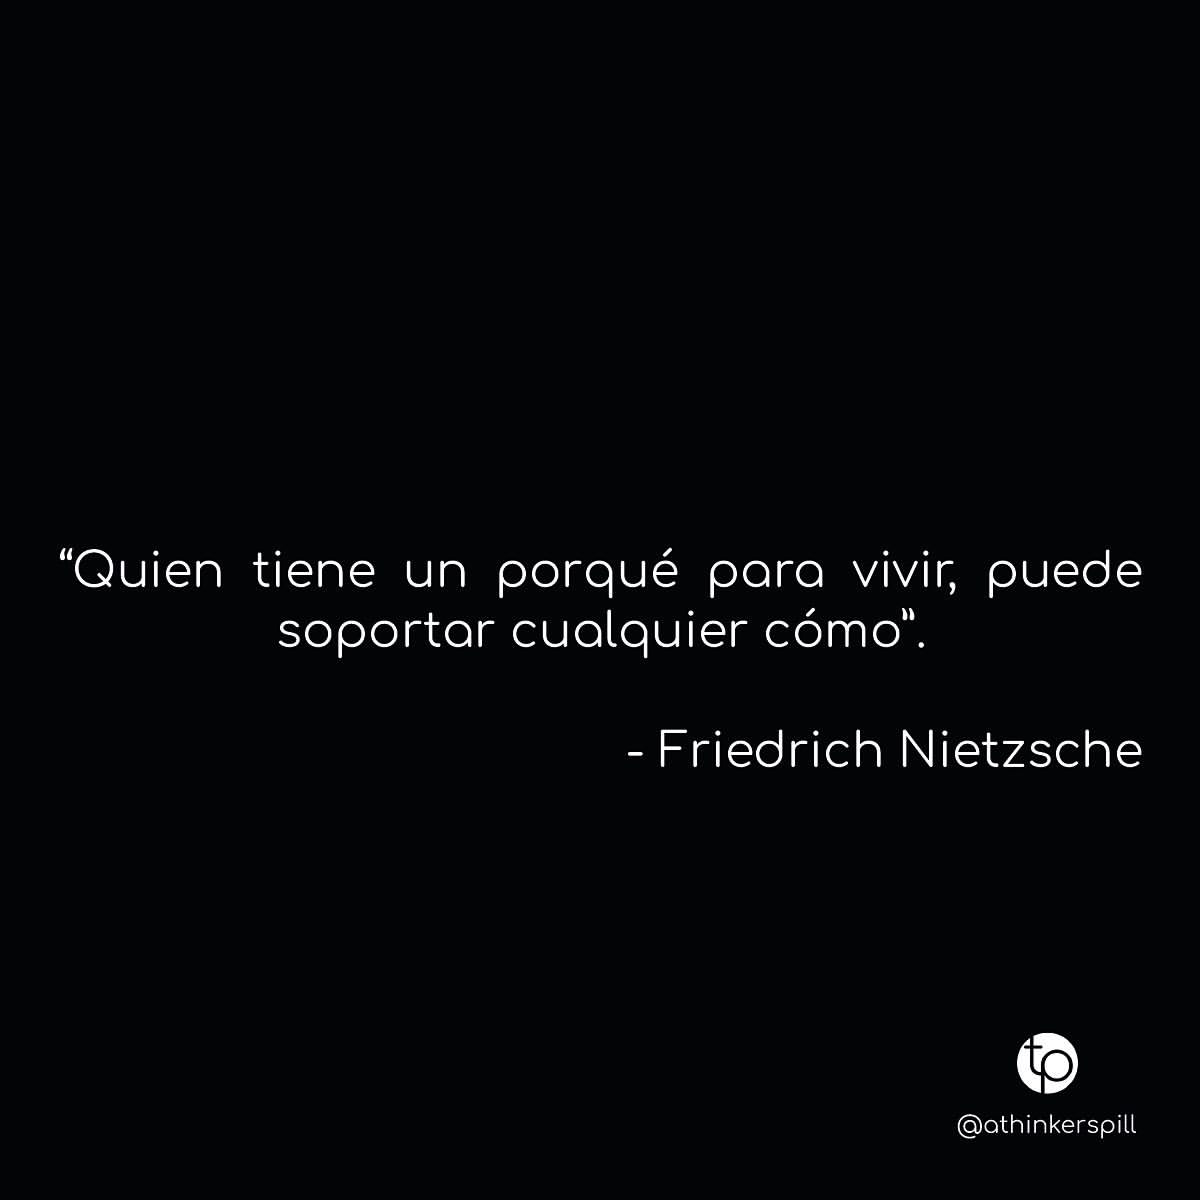 Quien tiene un porqué para vivir, puede soportar cualquier cómo. Friedrich Nietzsche.